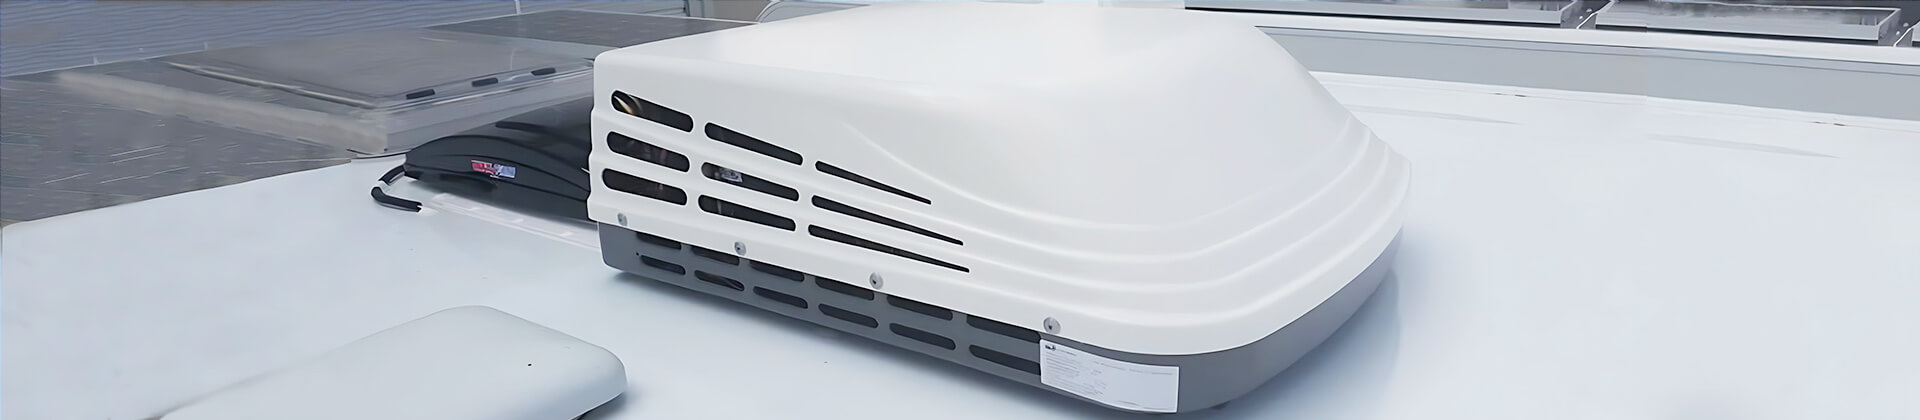 Explore Caravan/RV Air Conditioners Series